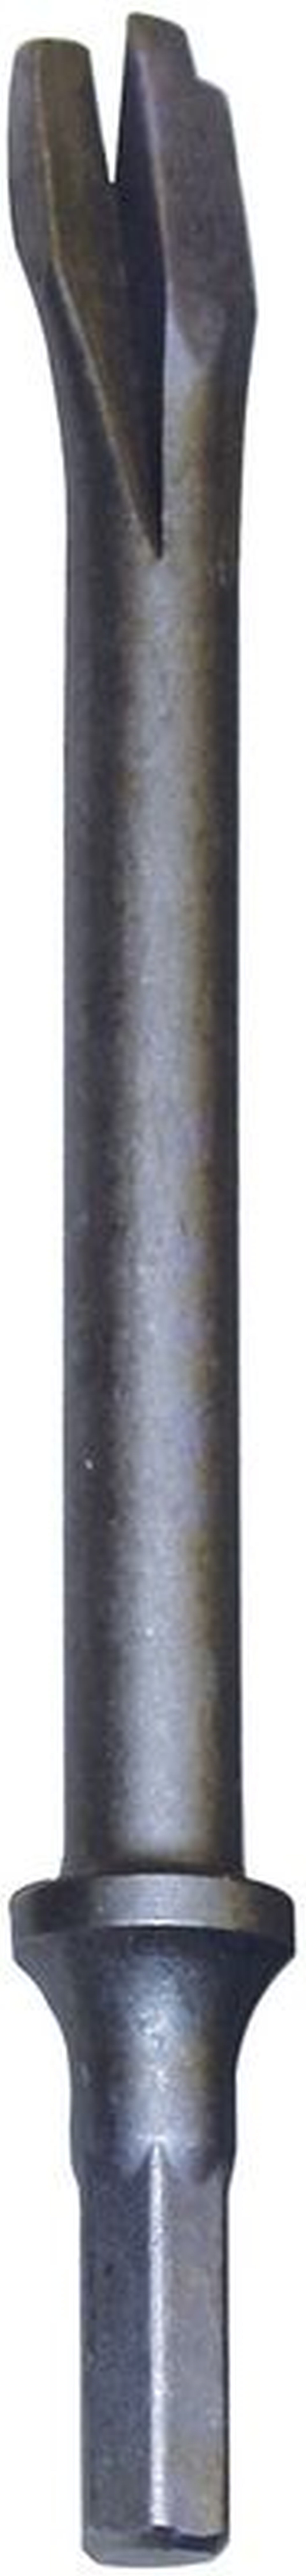 GÜDE příslušenství k pneu sekacímu kladivu - sekáč oddělovací 180mm 40074